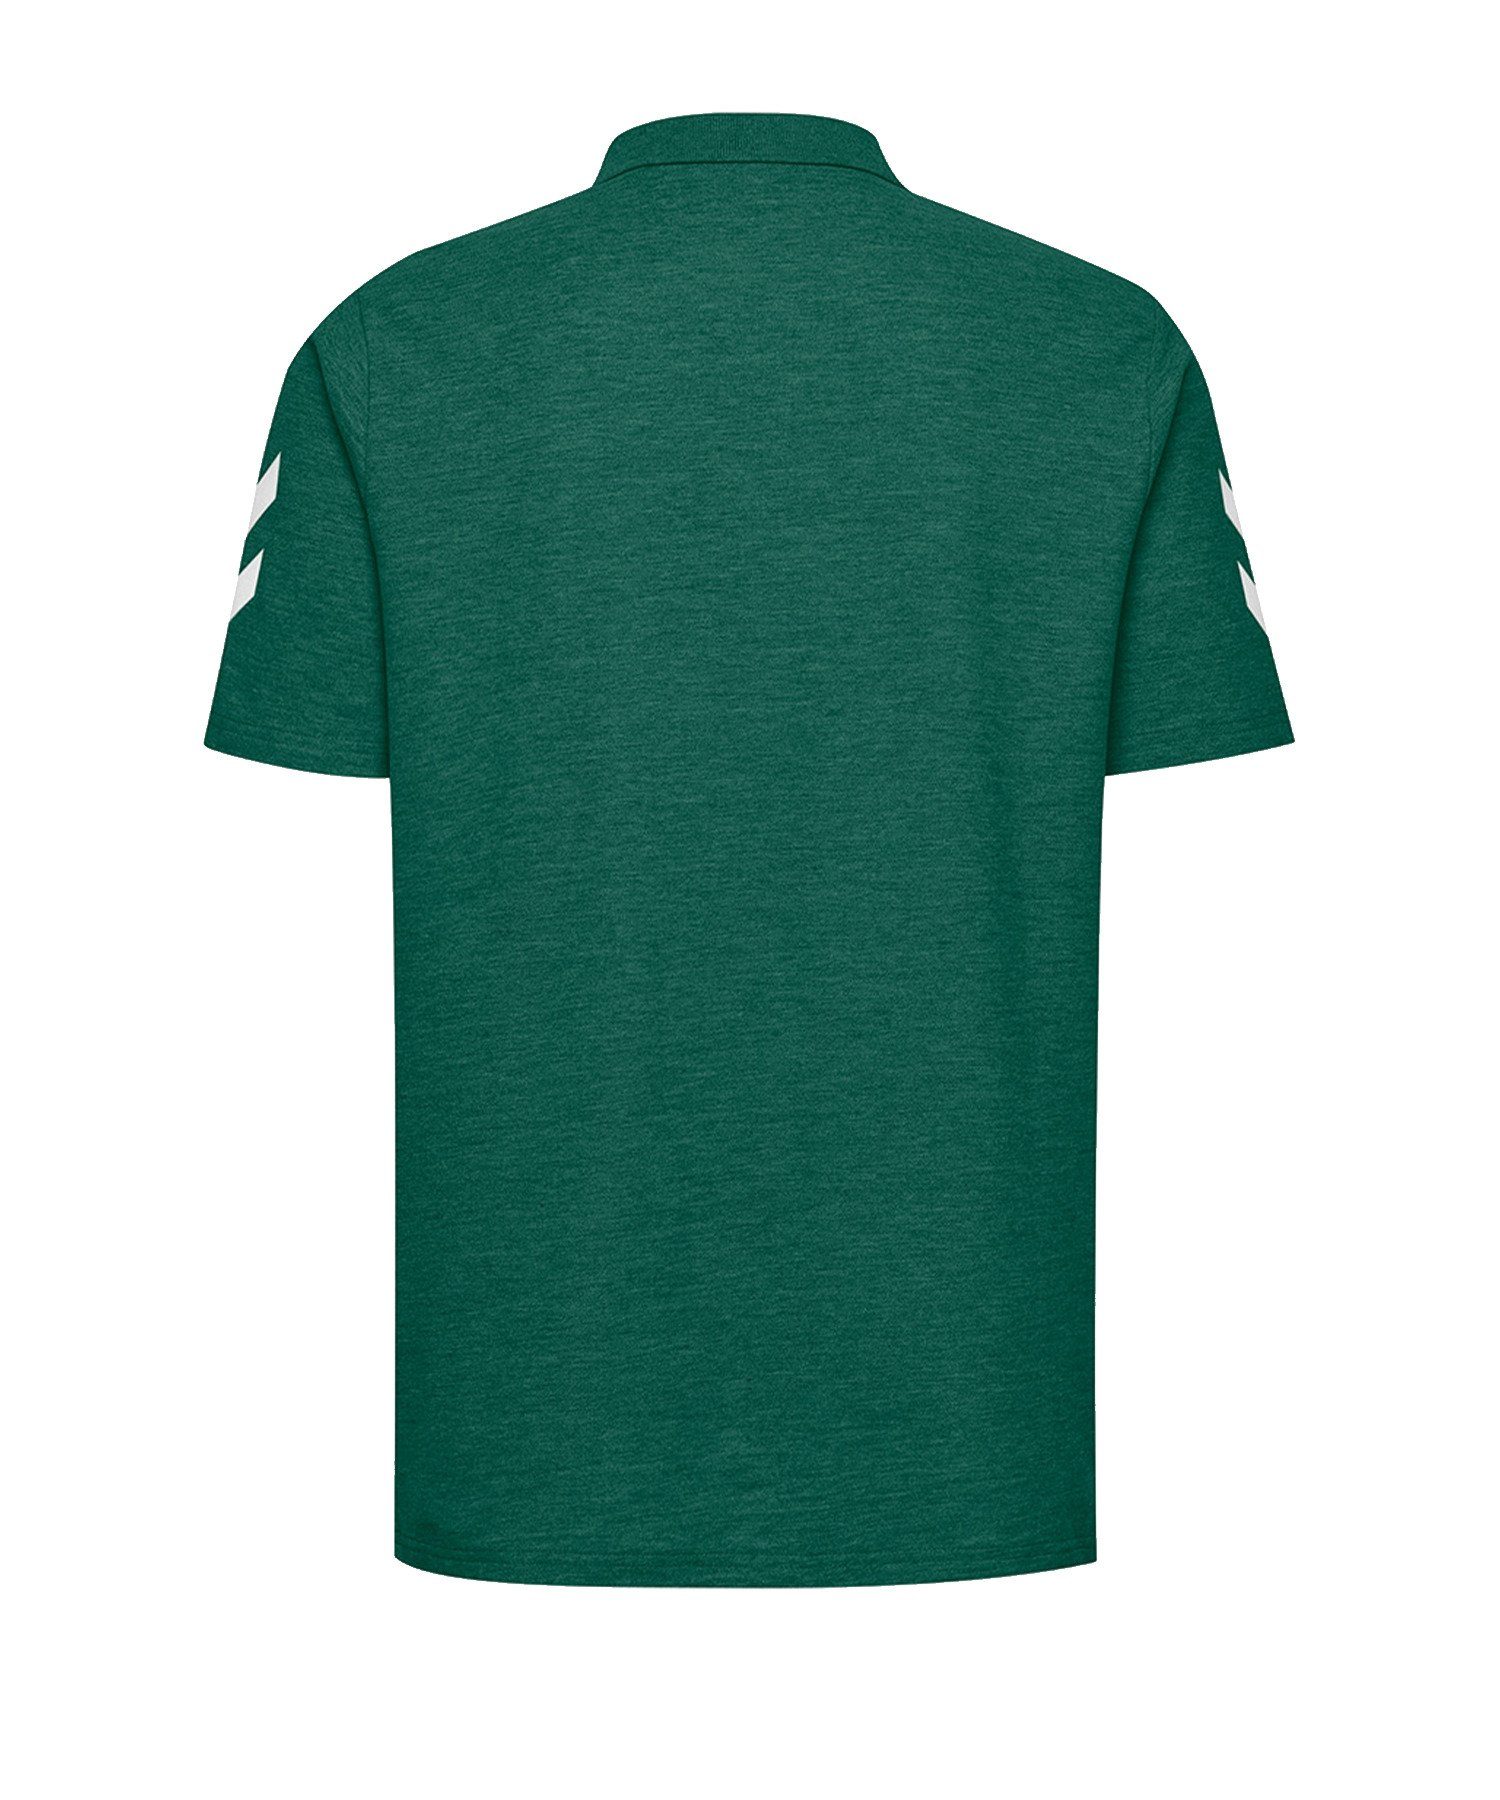 Cotton Poloshirt hummel Gruen default T-Shirt